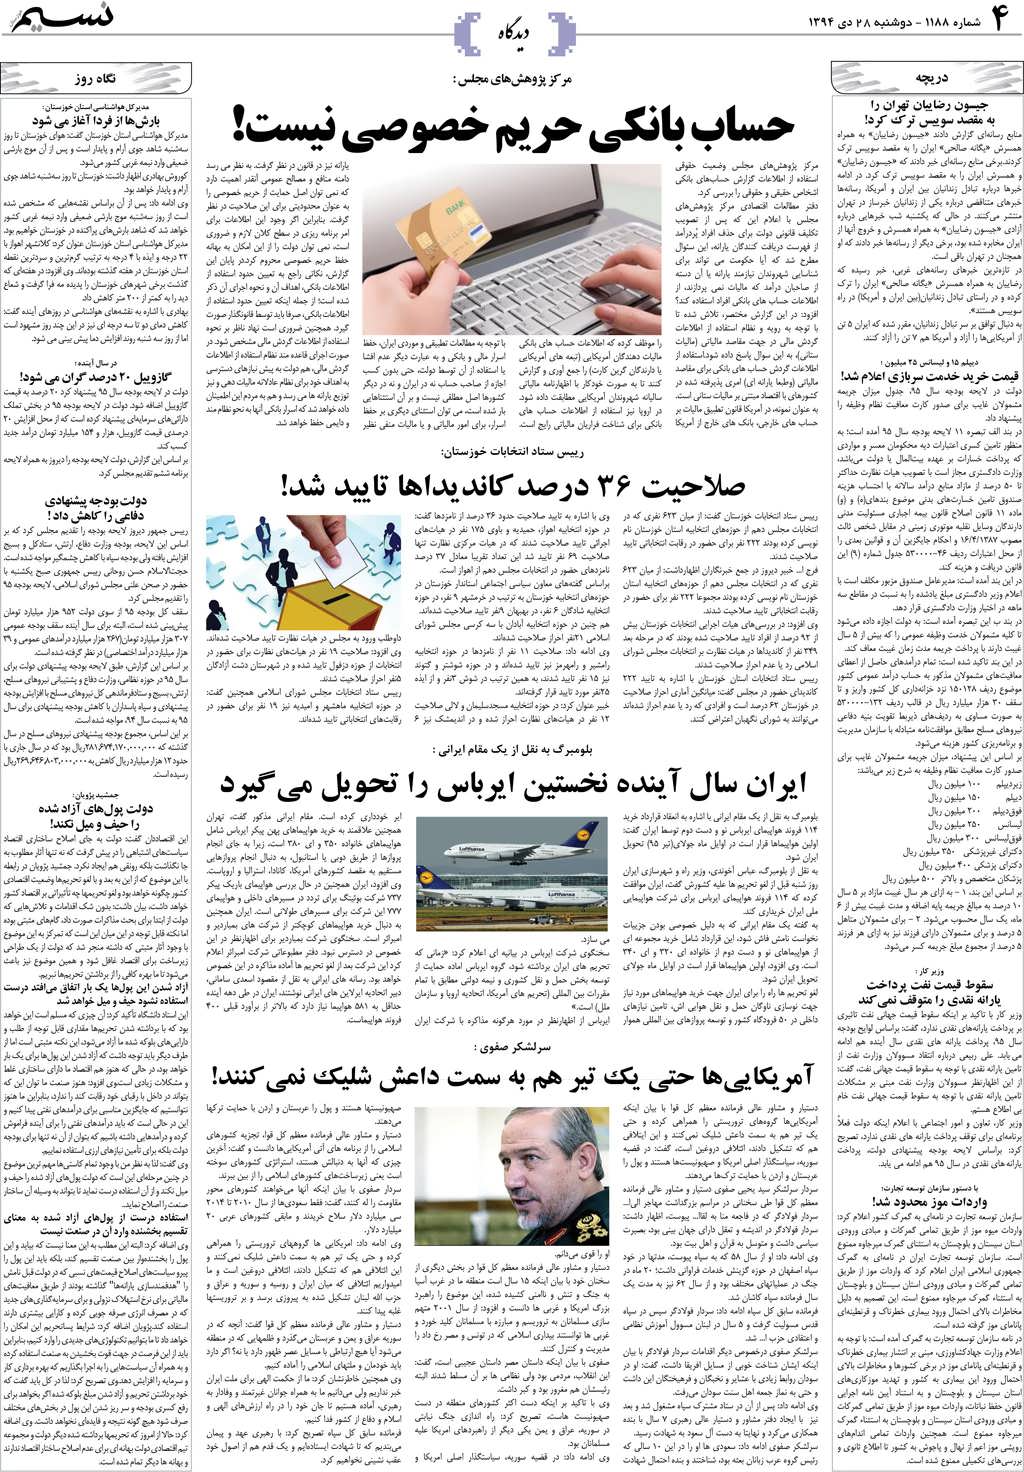 صفحه دیدگاه روزنامه نسیم شماره 1188